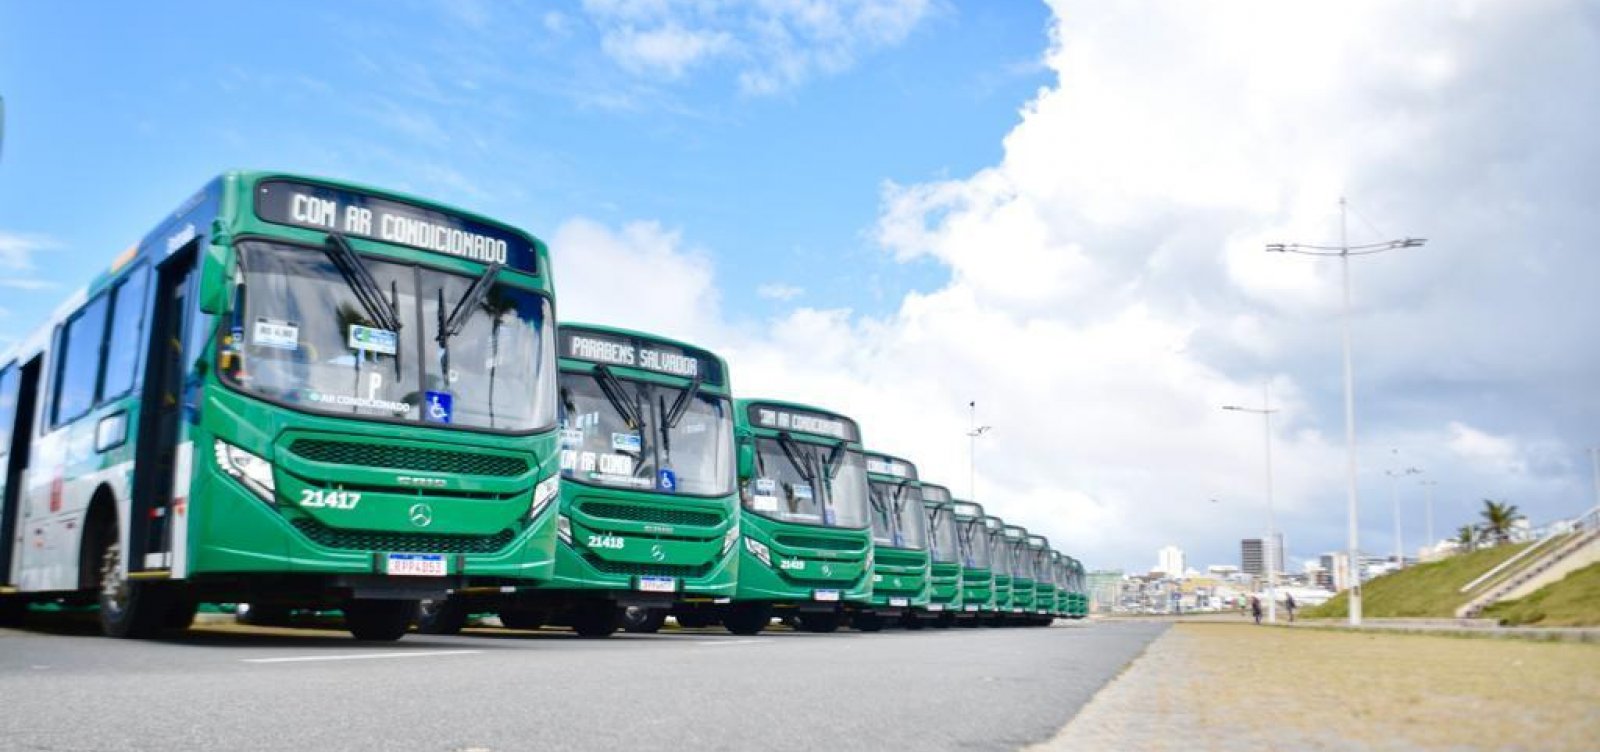 Nova linha de ônibus começa a circular no bairro do Doron, em Salvador